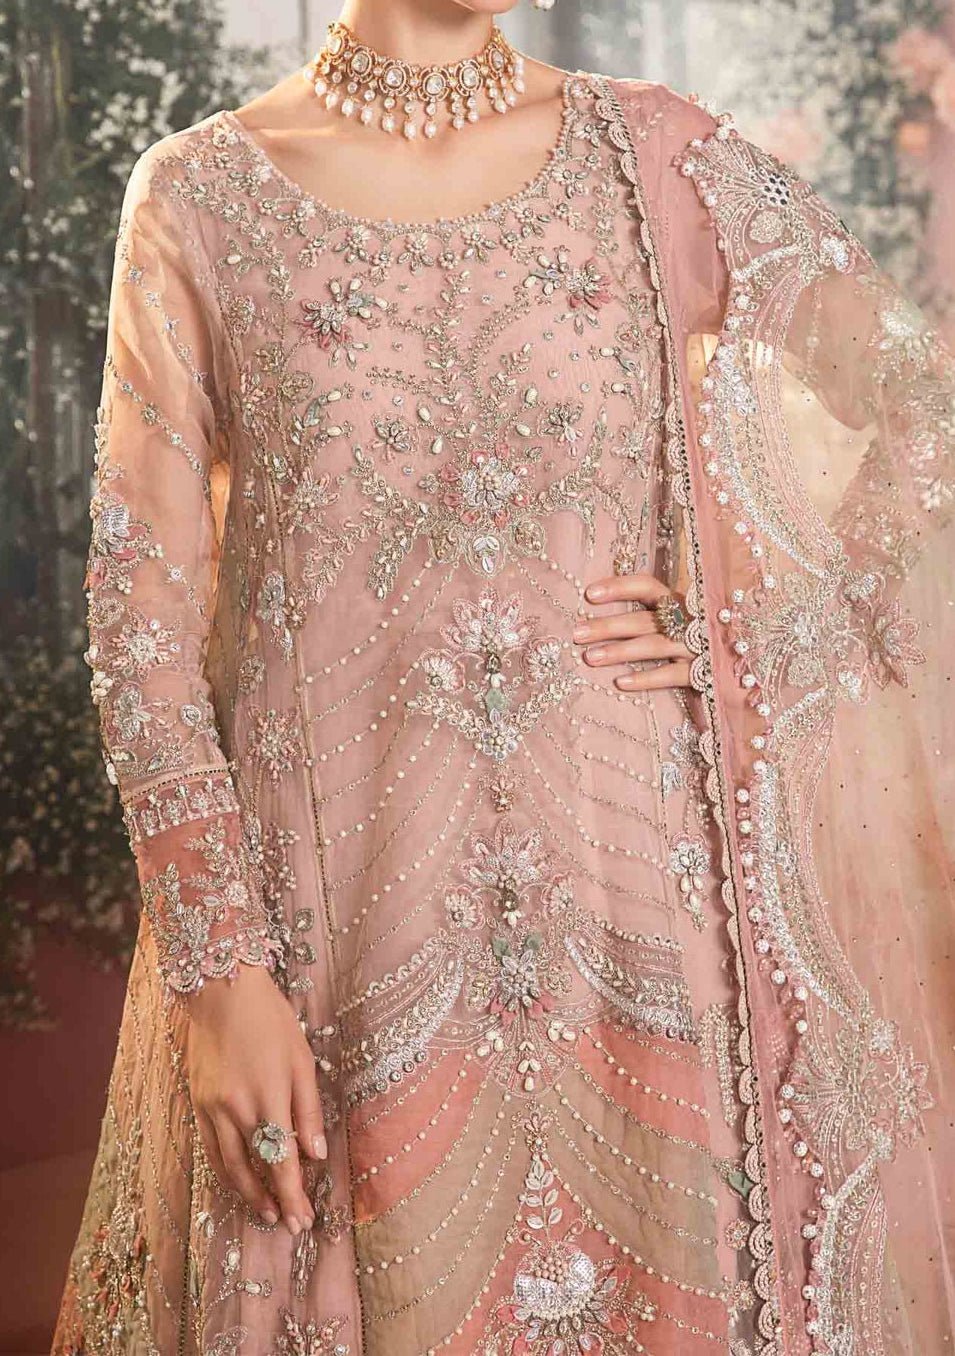 Maria.B Mbroidered Pakistani Organza Lehenga Suit - db24594